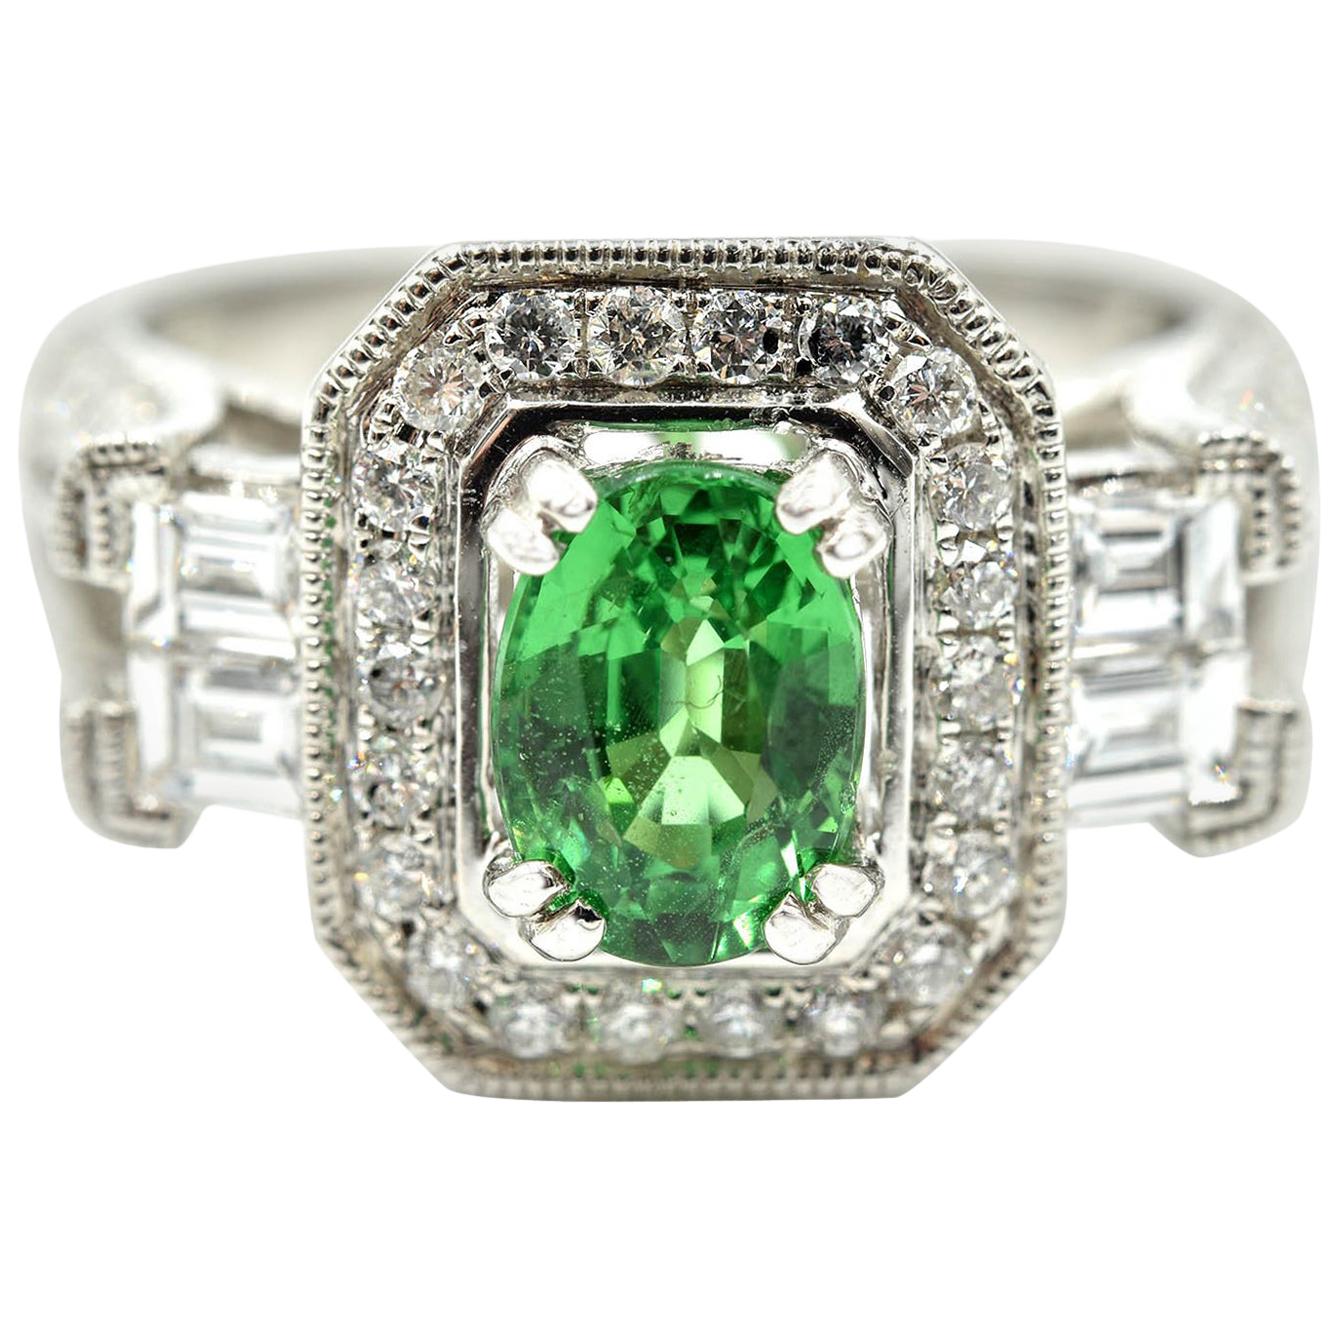 Green 1.33 Carat Tsavorite with Diamond Mounting Ring 14 Karat White Gold